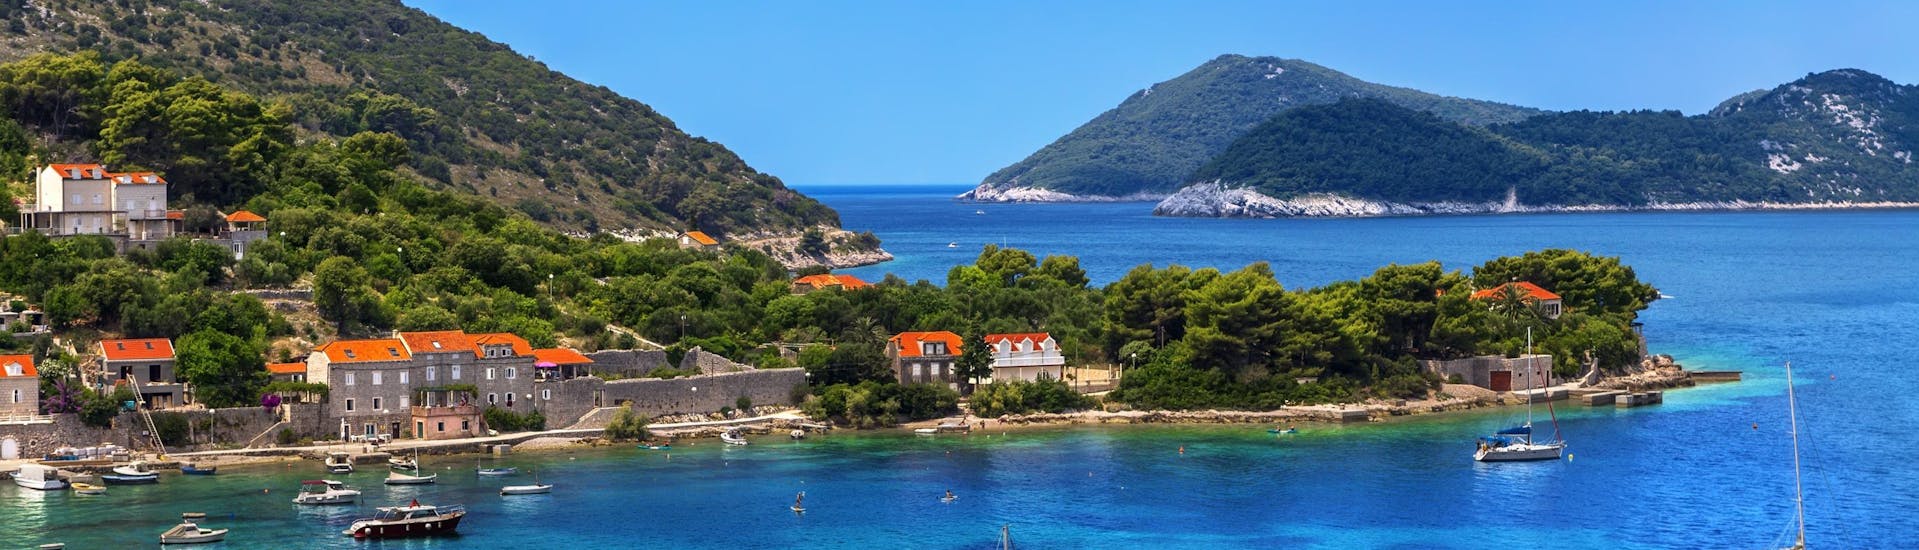 Imagen de la isla de Kolocep, que forma parte de las islas Elaphiti junto a la costa de Dubrovnik, un destino popular para las excursiones en barco.